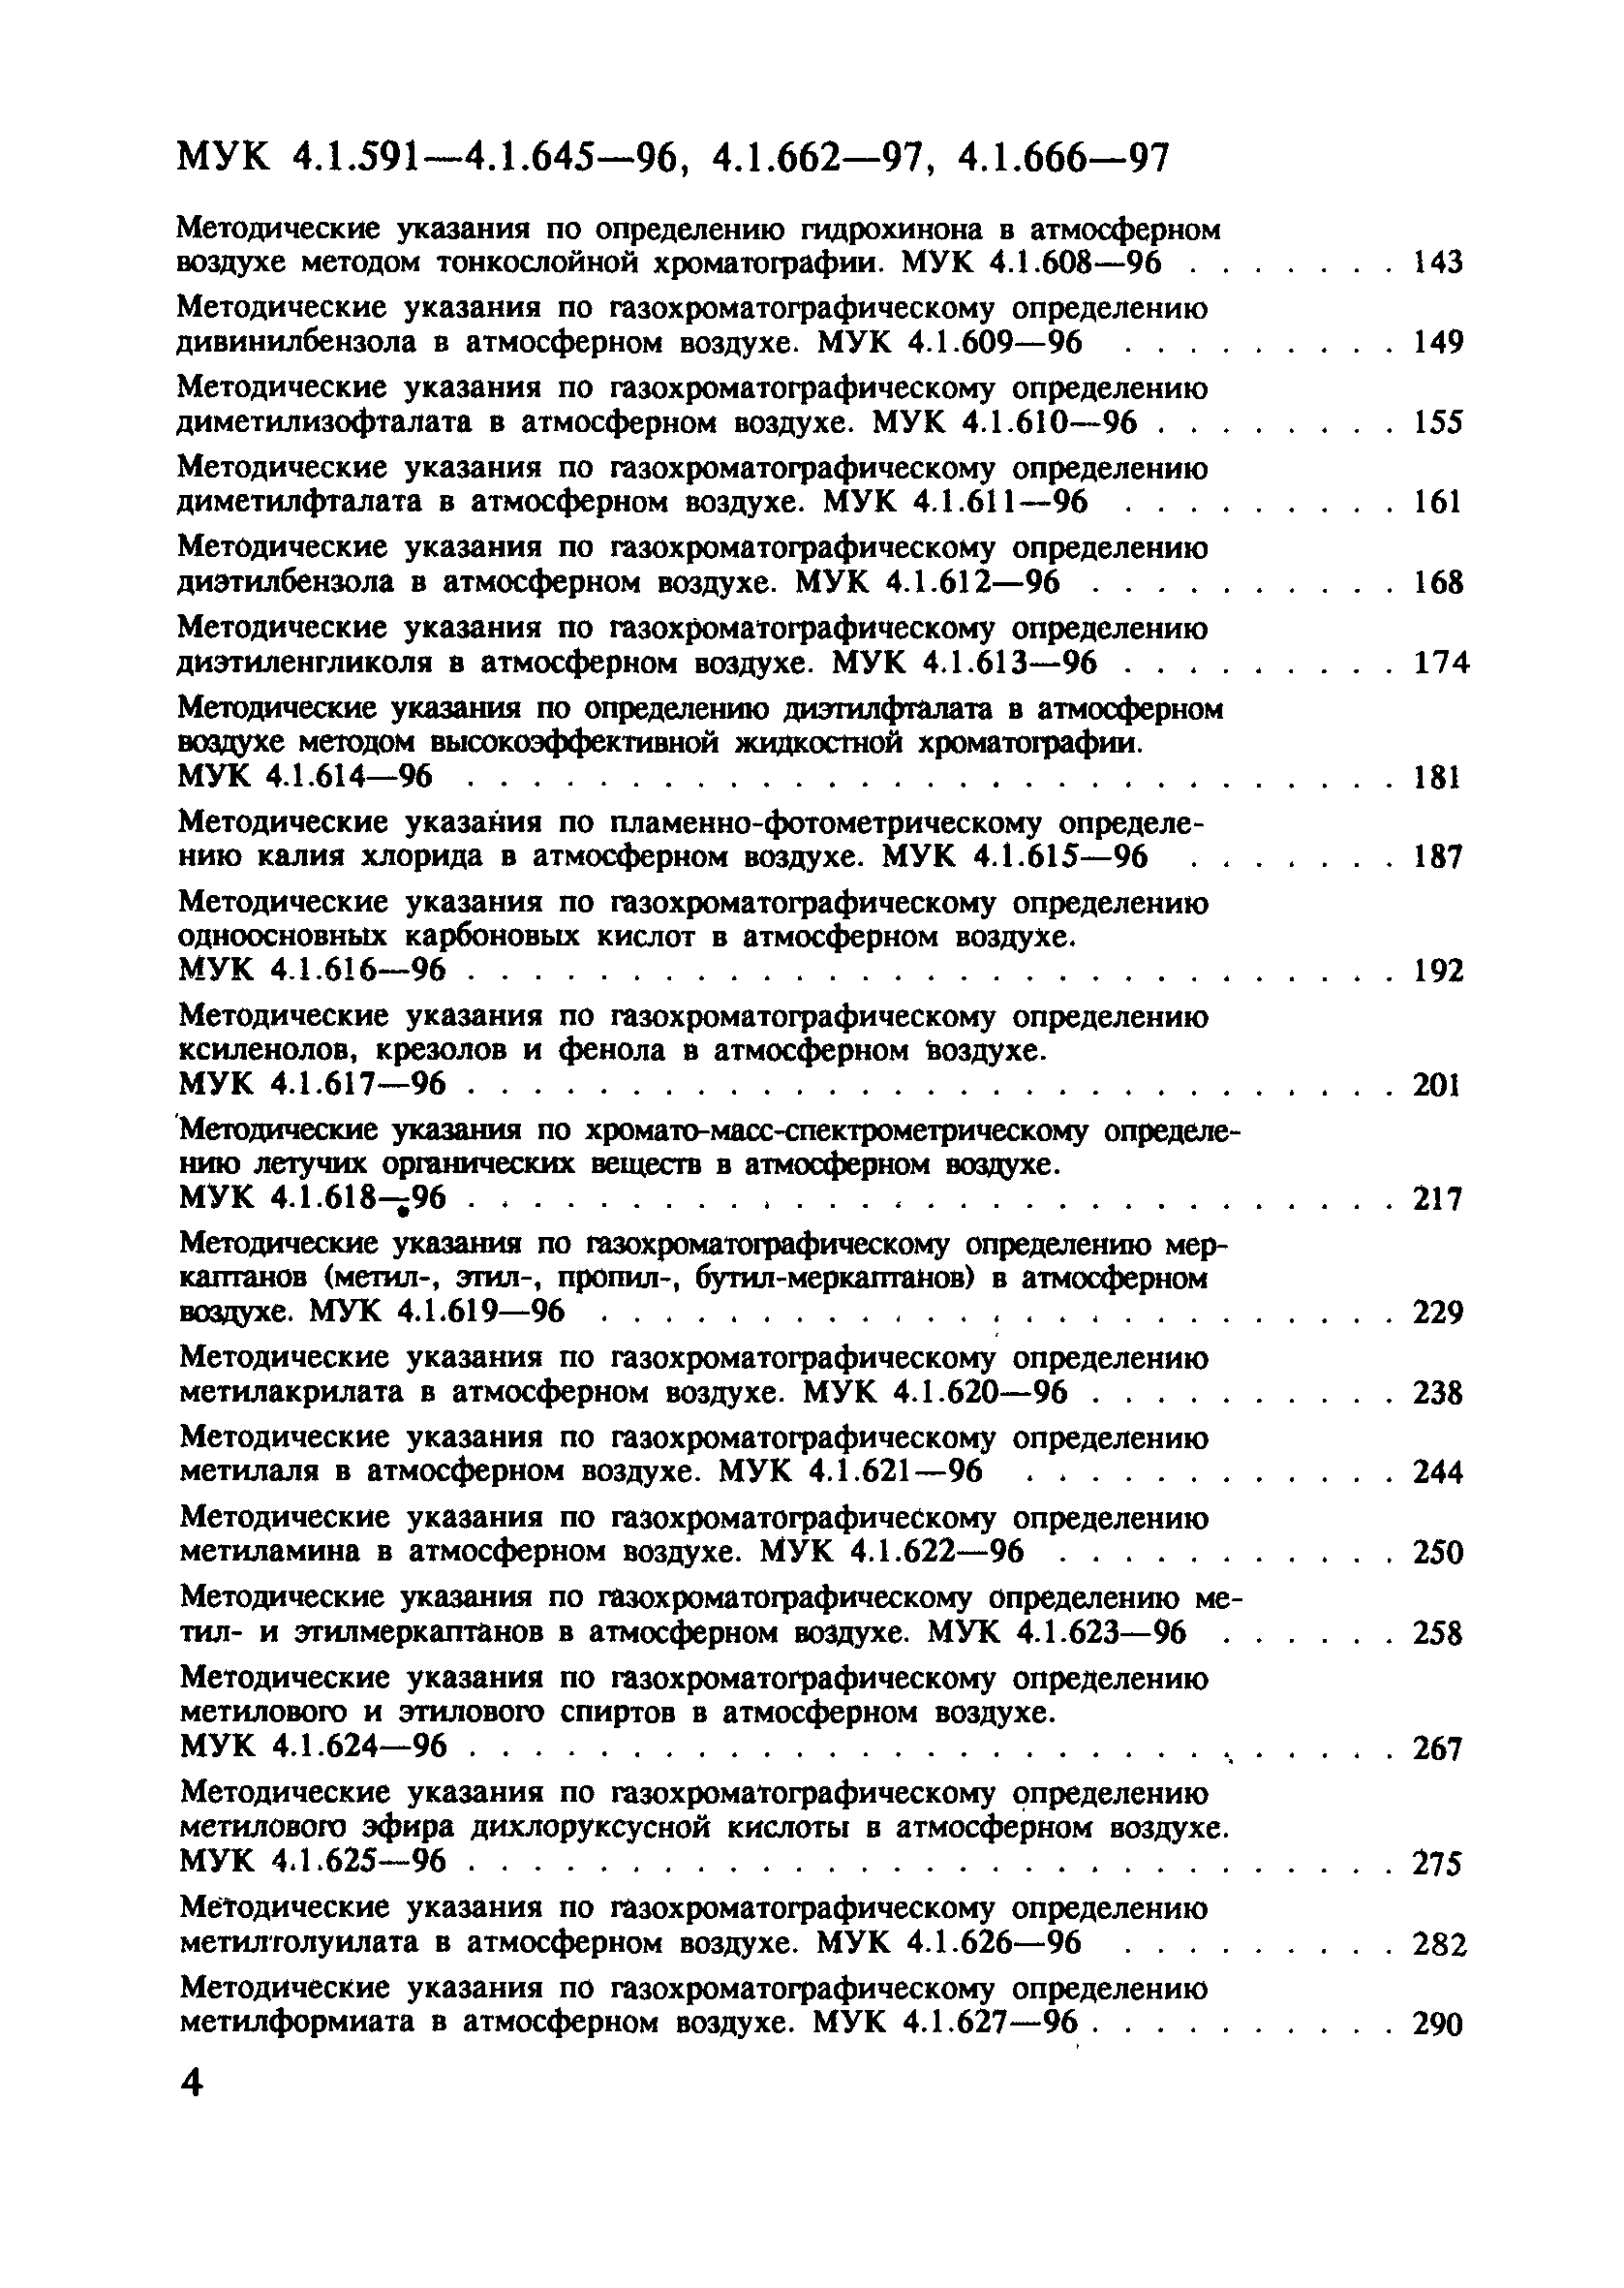 МУК 4.1.611-96